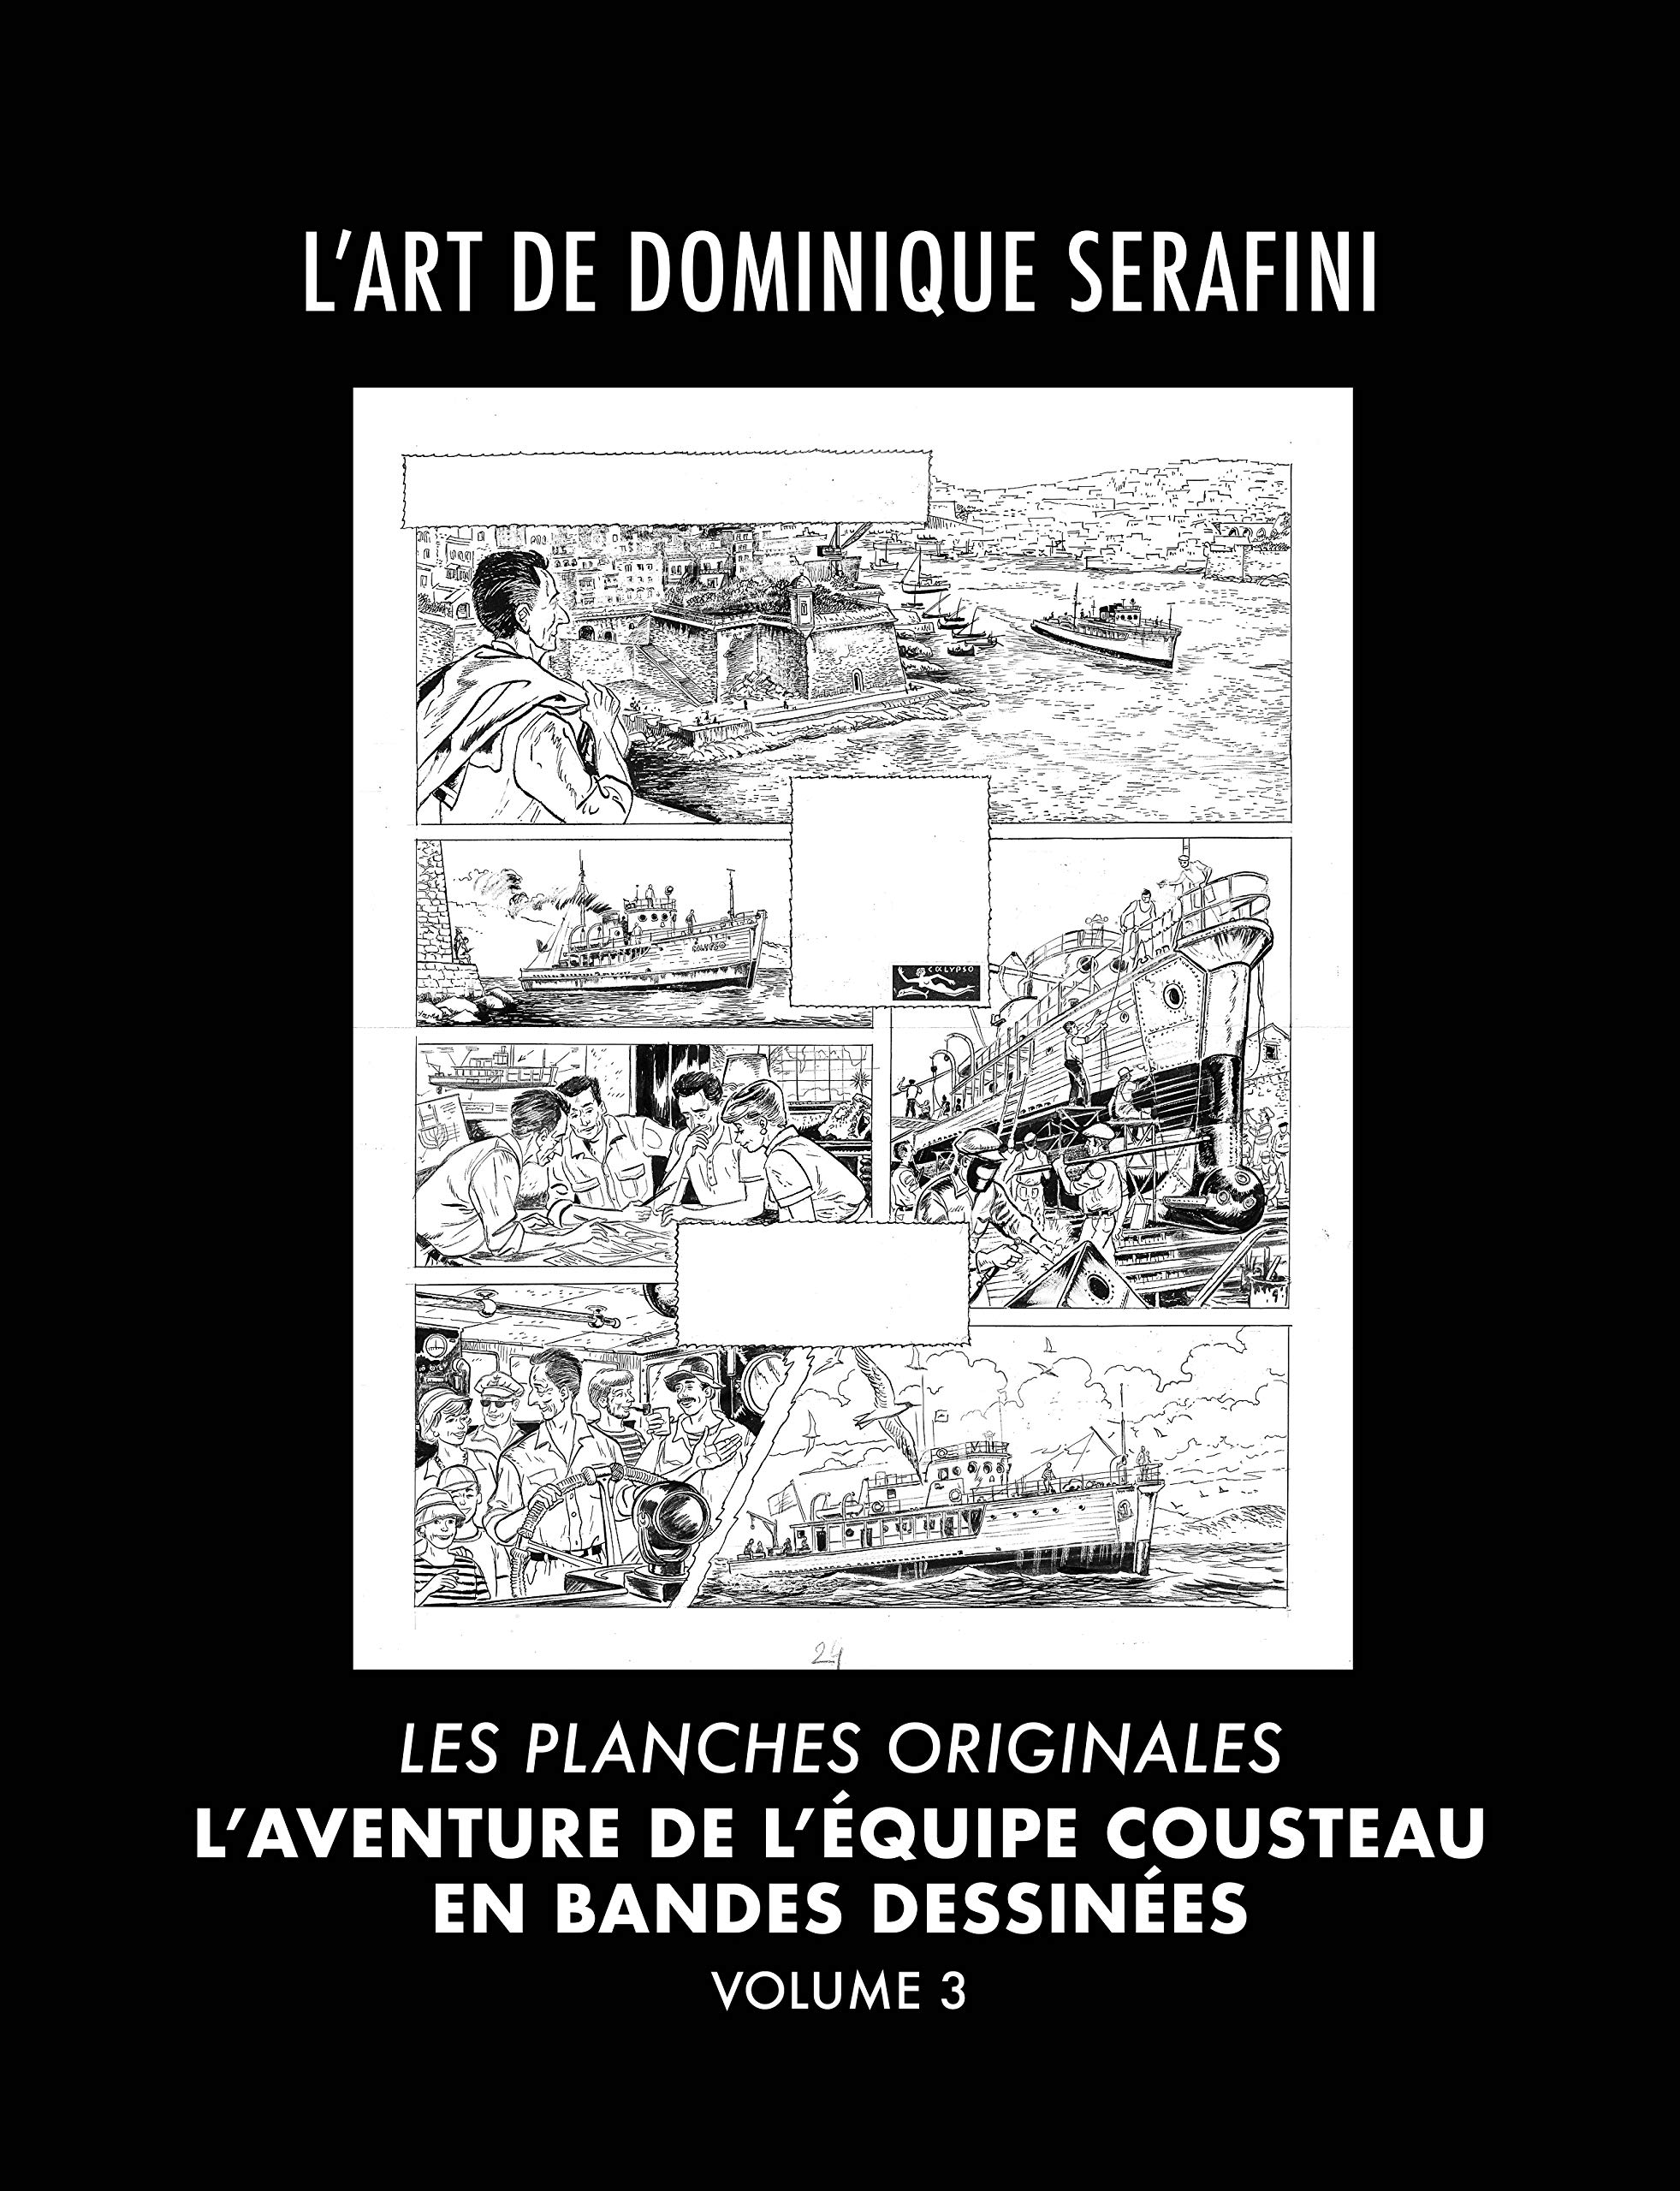 L'Art de Dominique Serafini - Volume 3: Les Planches Originales de l'Aventure de l'Équipe Cousteau en Bandes Dessinées (L'Aventure de L'Equipe Cousteau en Bandes Dessinées) (French Edition)